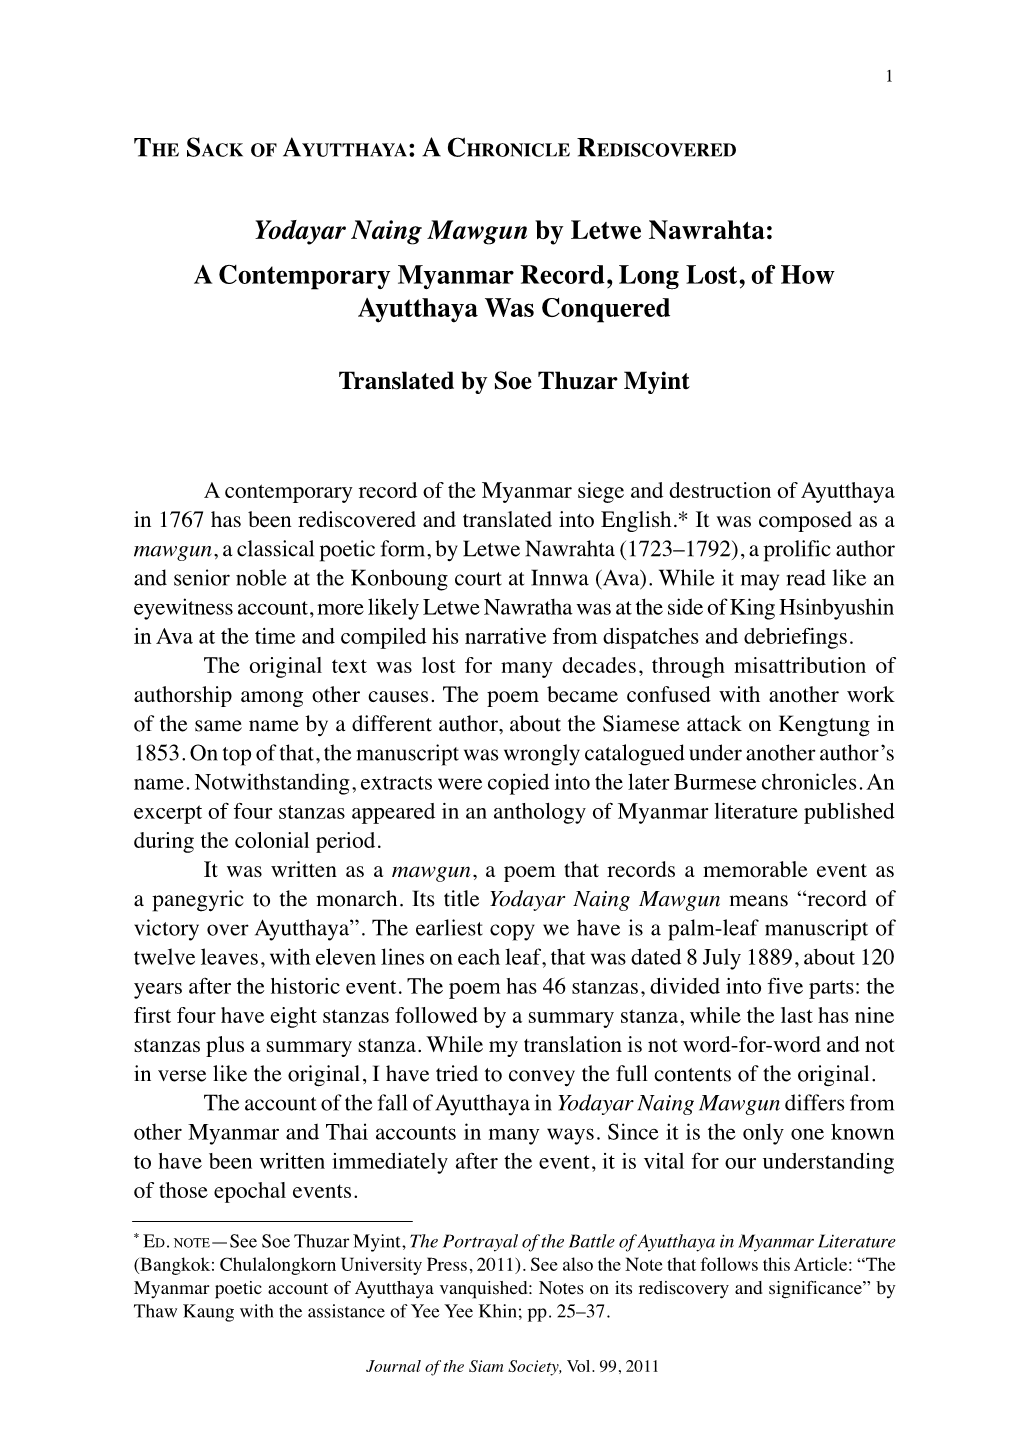 Yodayar Naing Mawgun by Letwe Nawrahta: a Contemporary Myanmar Record, Long Lost, of How Ayutthaya Was Conquered